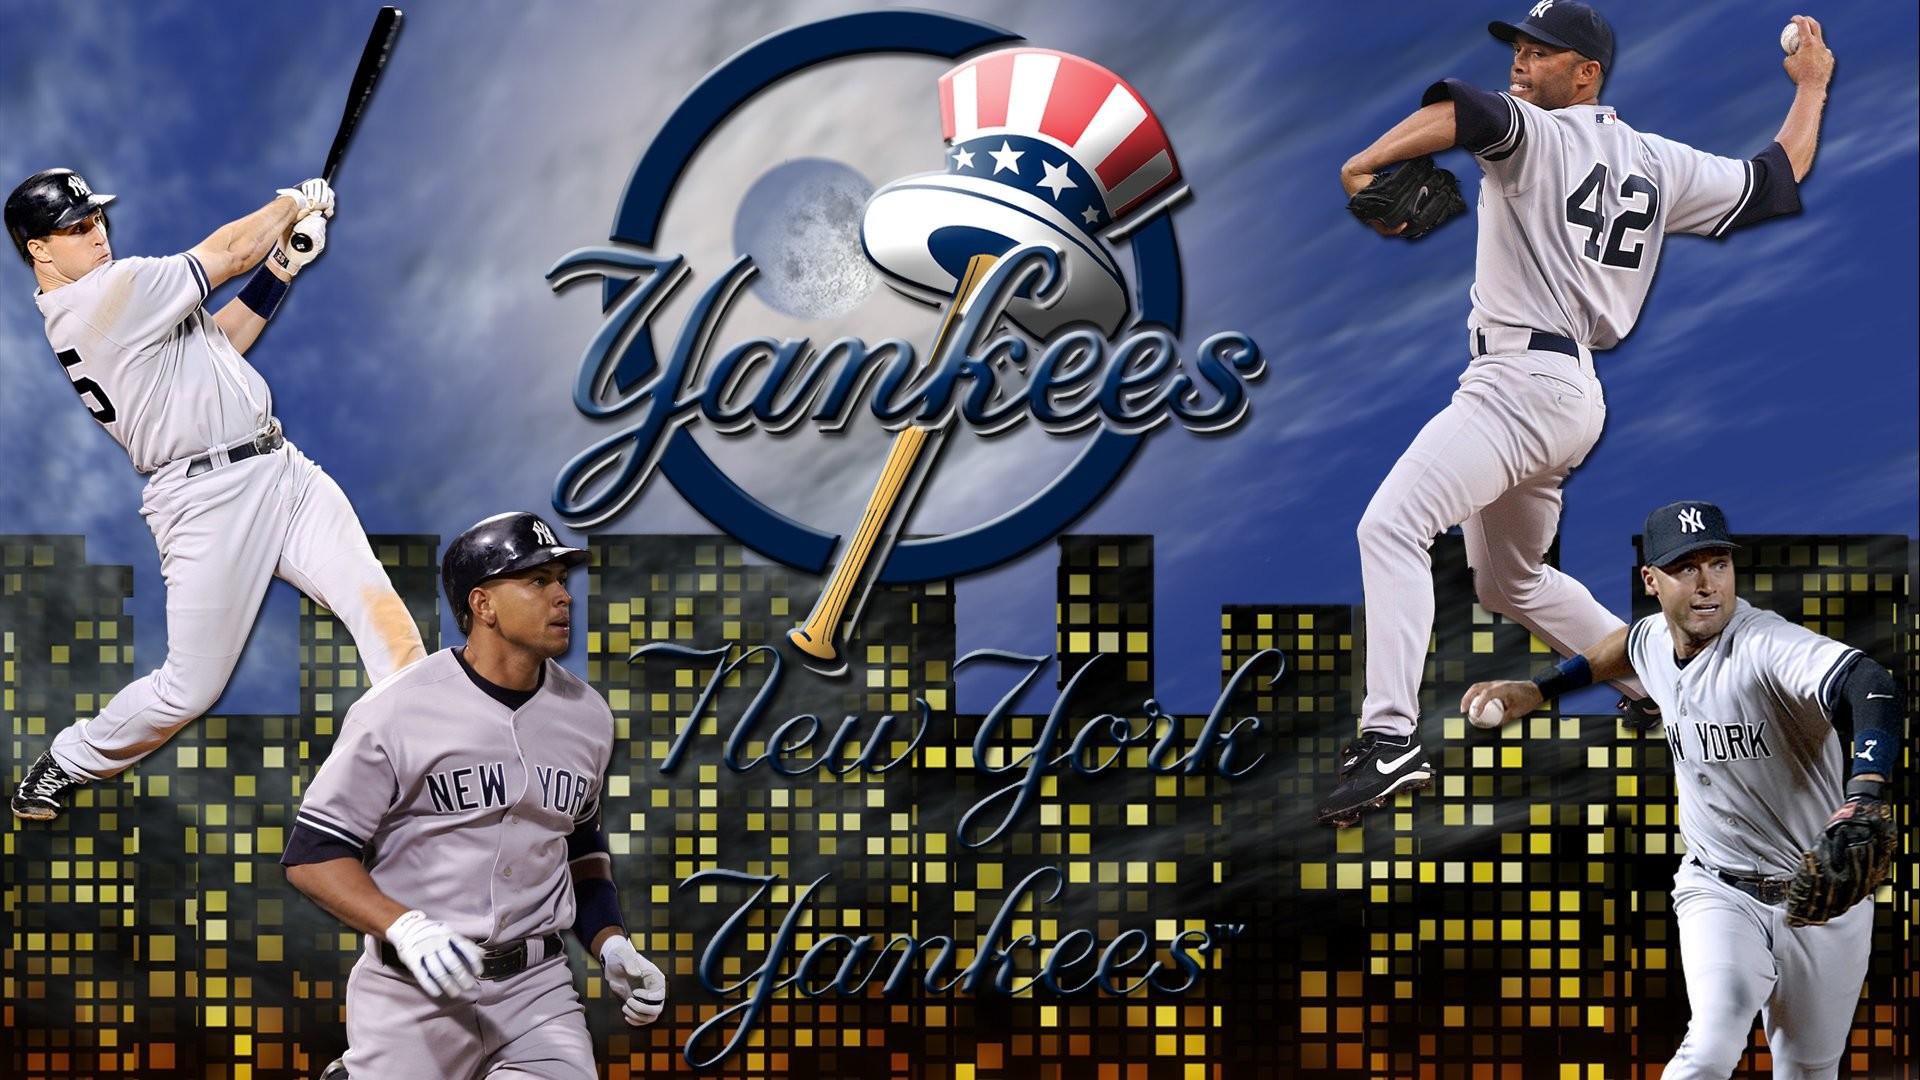 New York Yankees Stadium Wallpaper Image